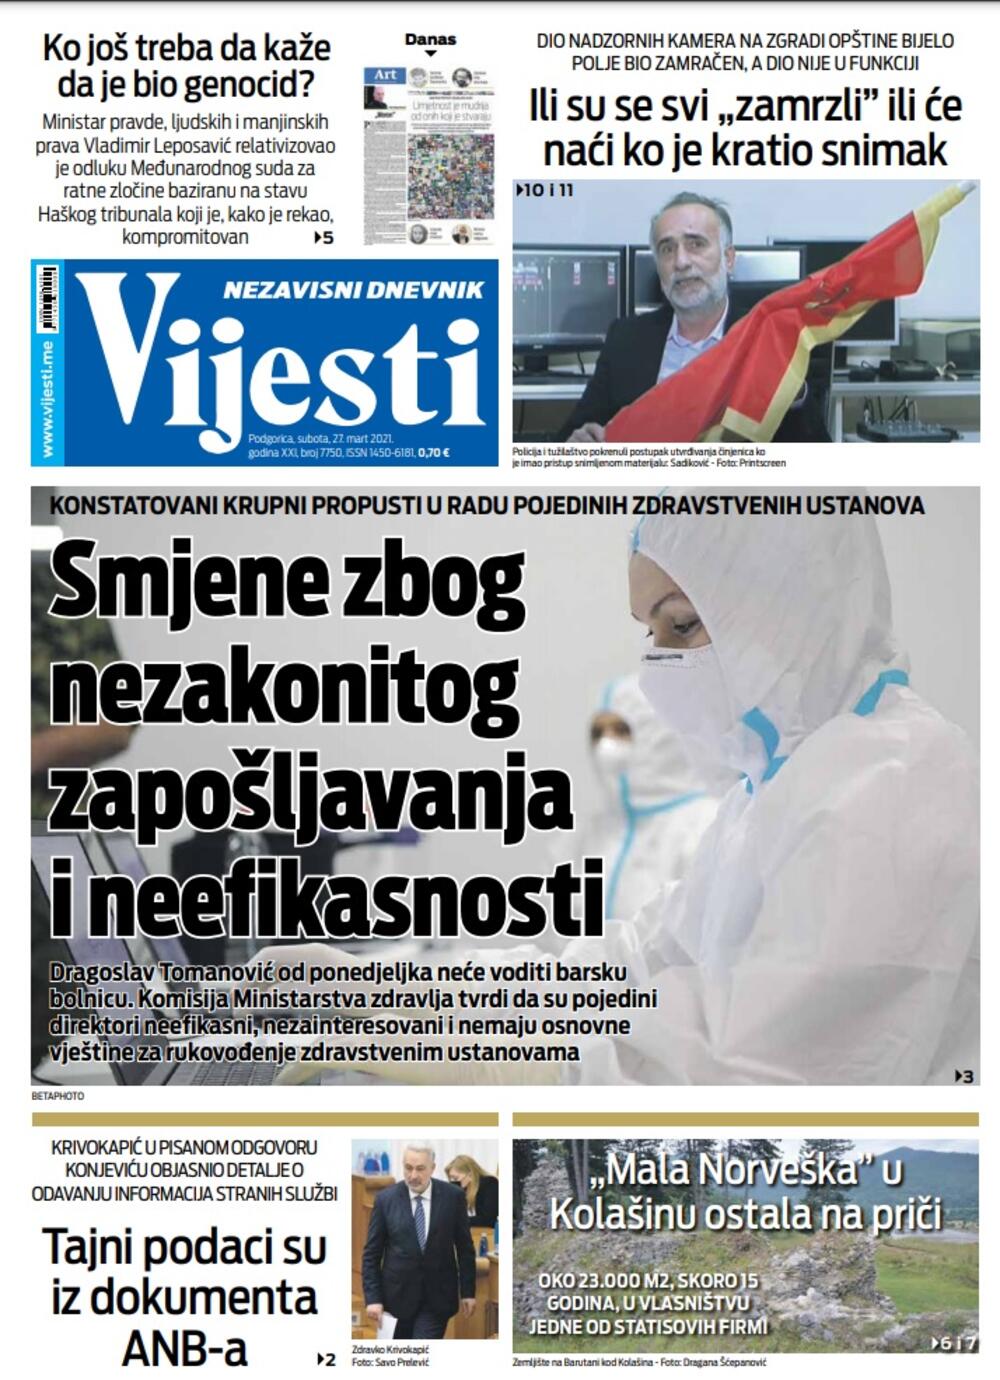 Naslovna strana "Vijesti" za 27. mart 2021., Foto: Vijesti